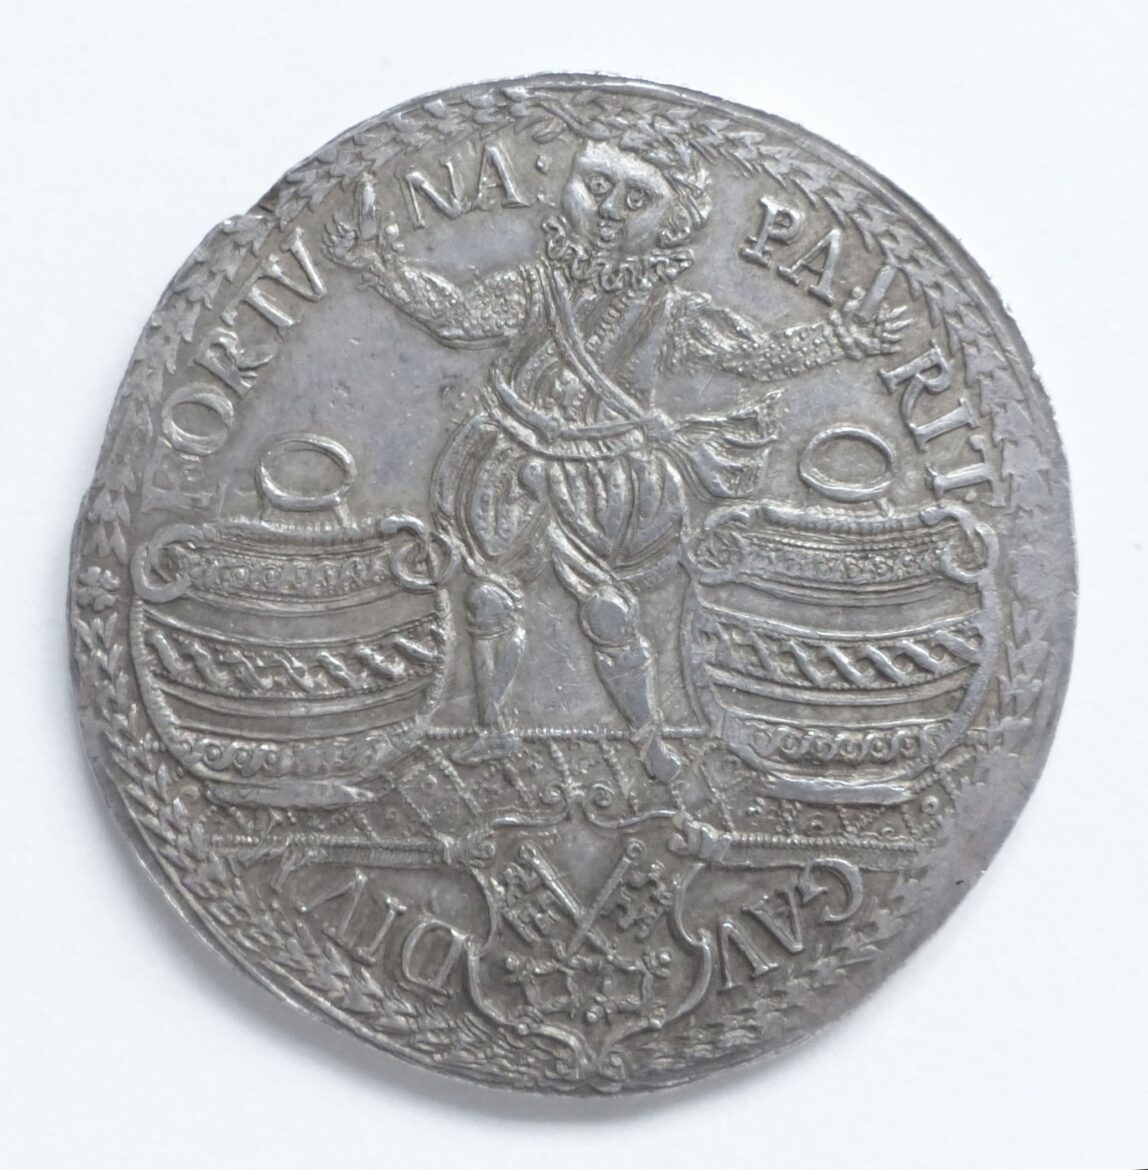 Schützen Medaille 1586